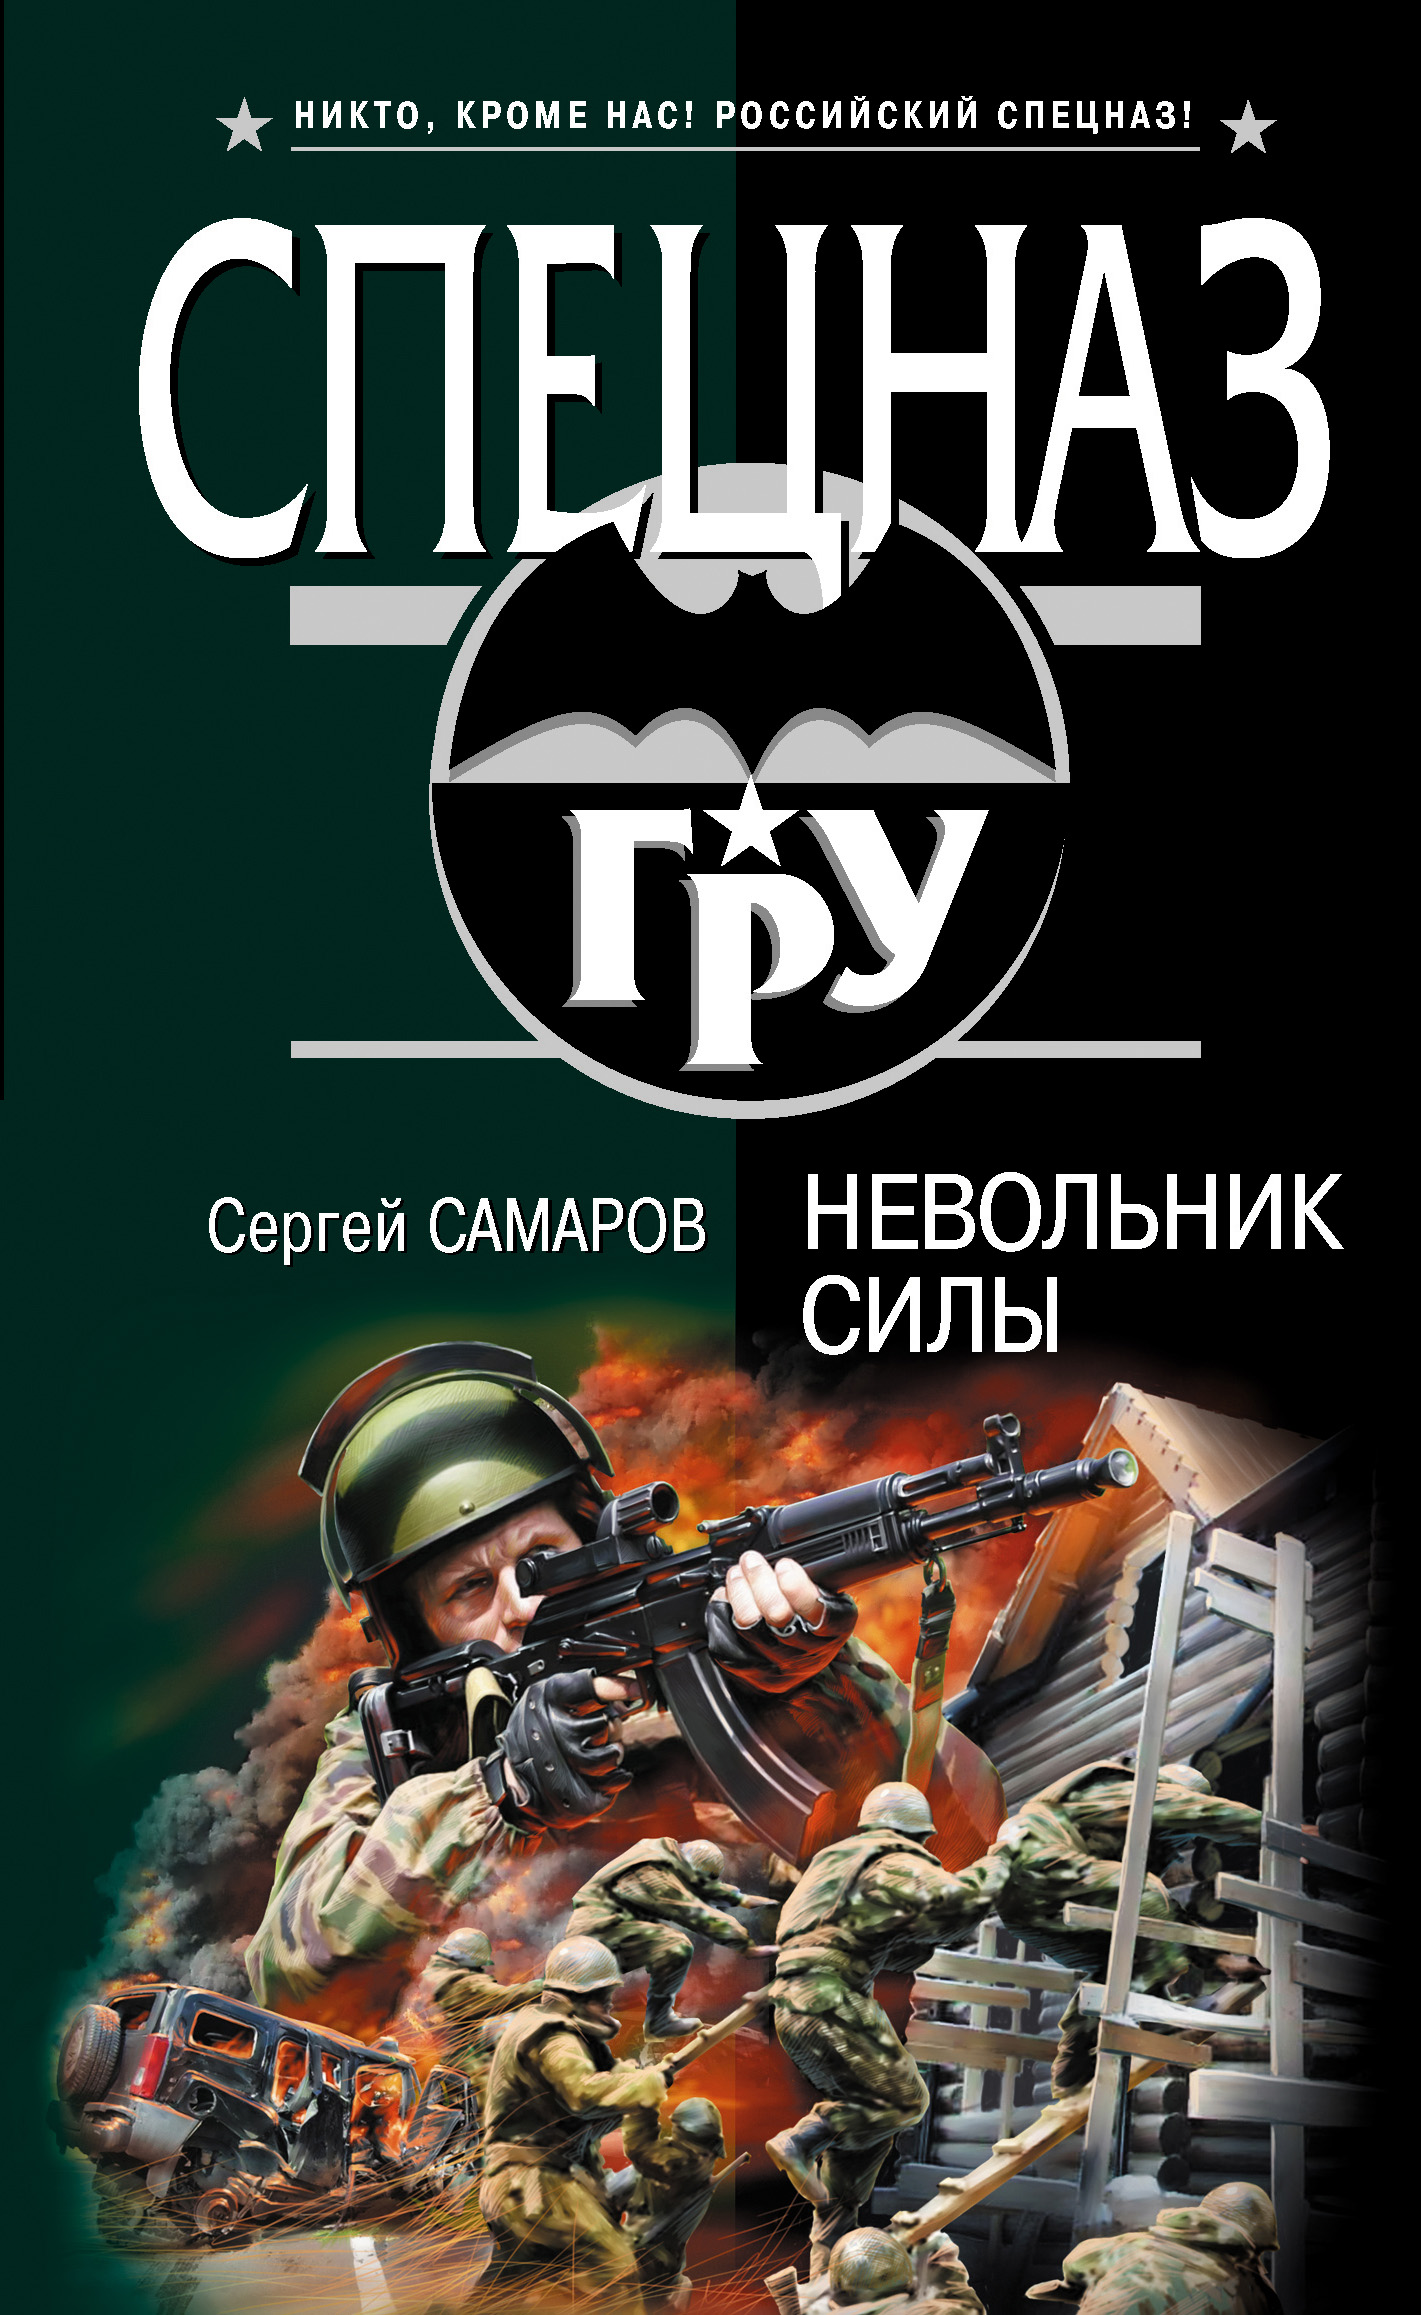 Читать книги про спецназ. Книг про спецназ Самаров. Книга спецназ России.